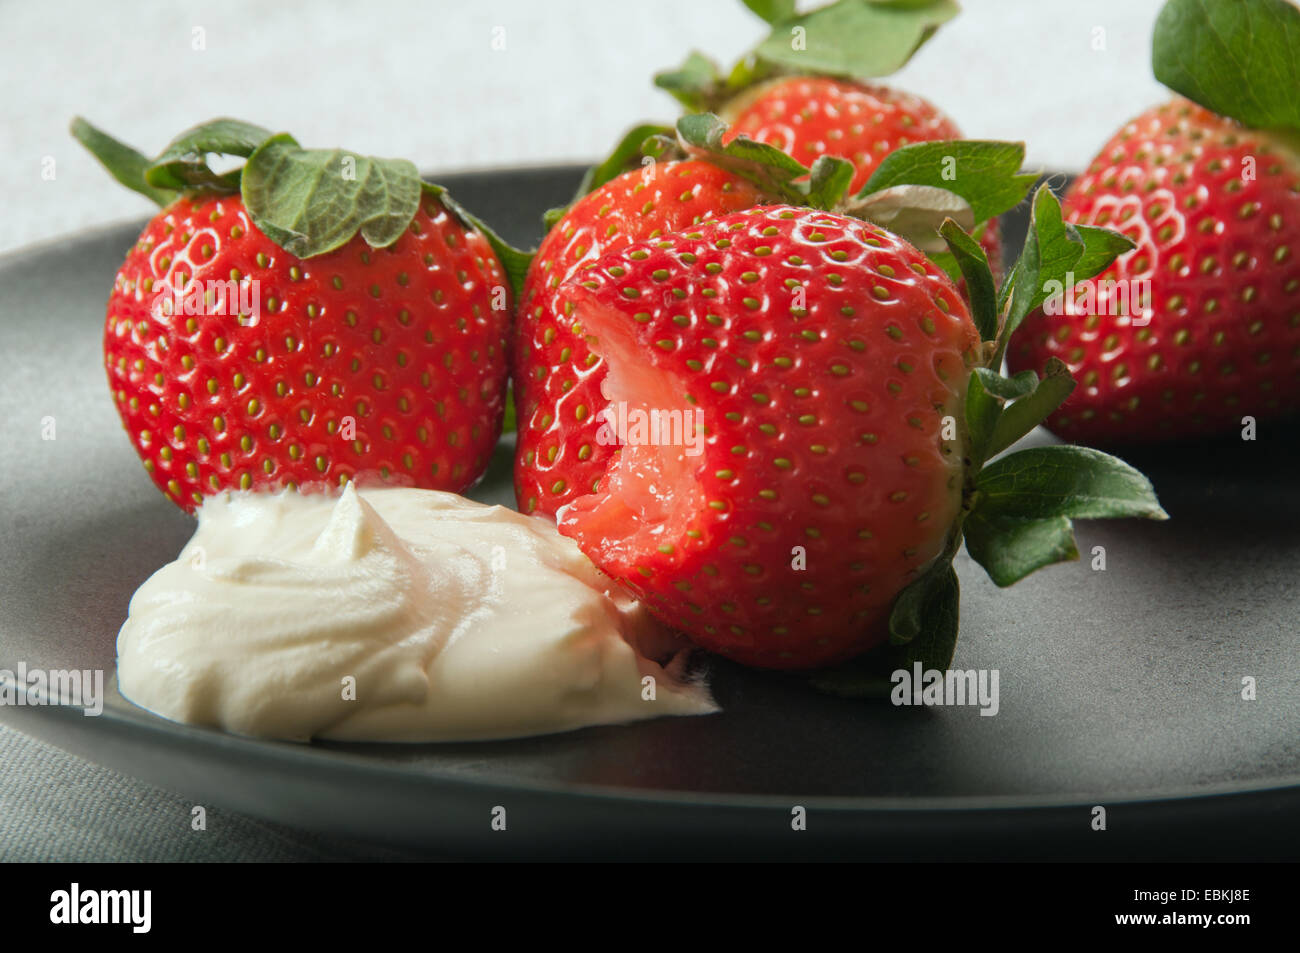 Des fraises et de la crème sur une plaque noire, une fraise avec une morsure. Banque D'Images